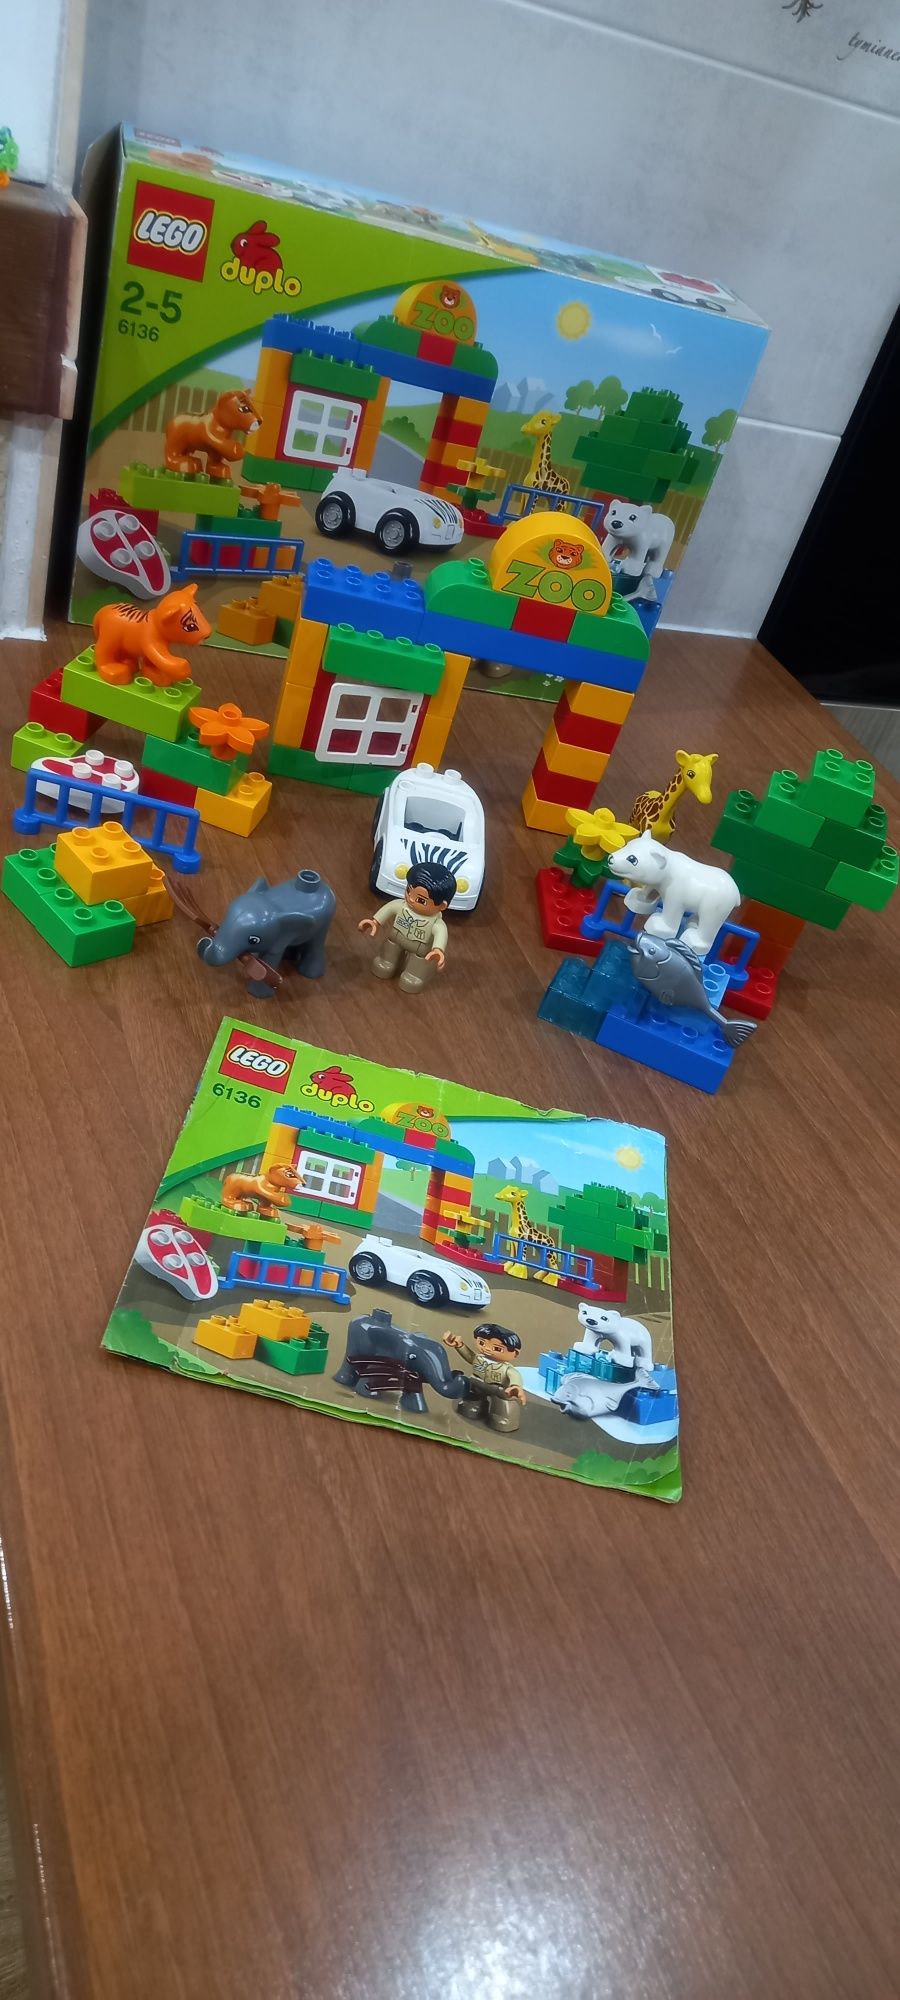 Lego Duplo 6136 zoo